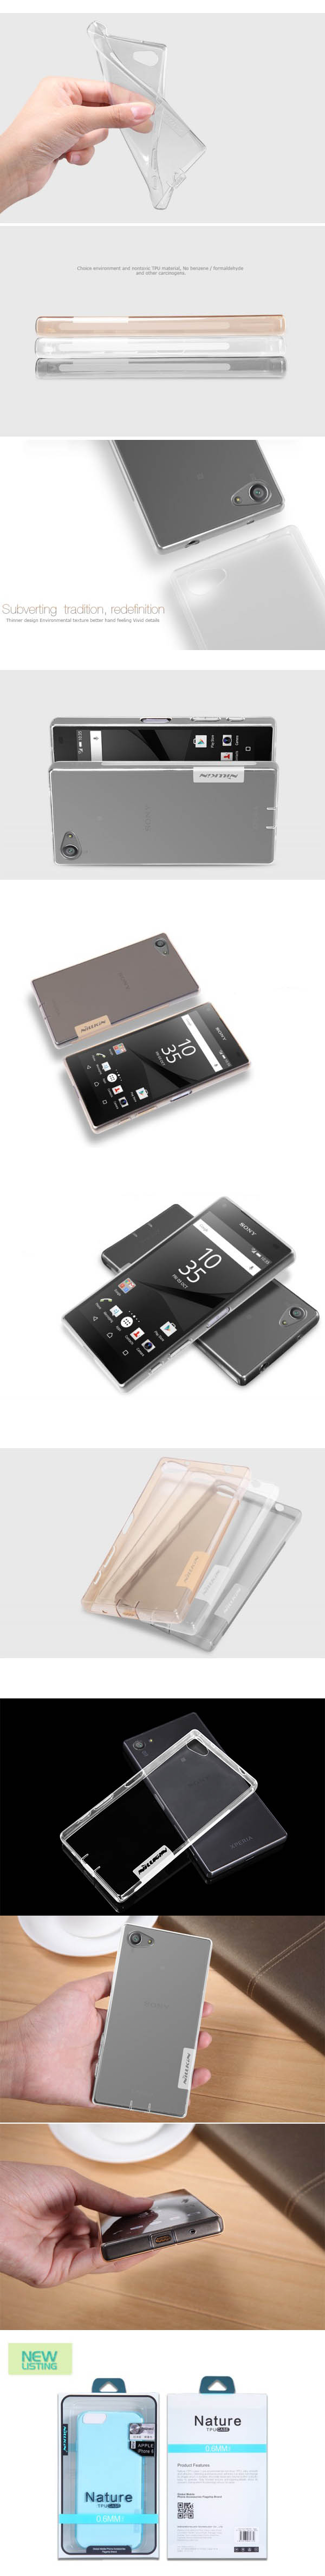 Ốp lưng Sony Z5 Compact Nillkin TPU nhựa dẻo trong suốt 33